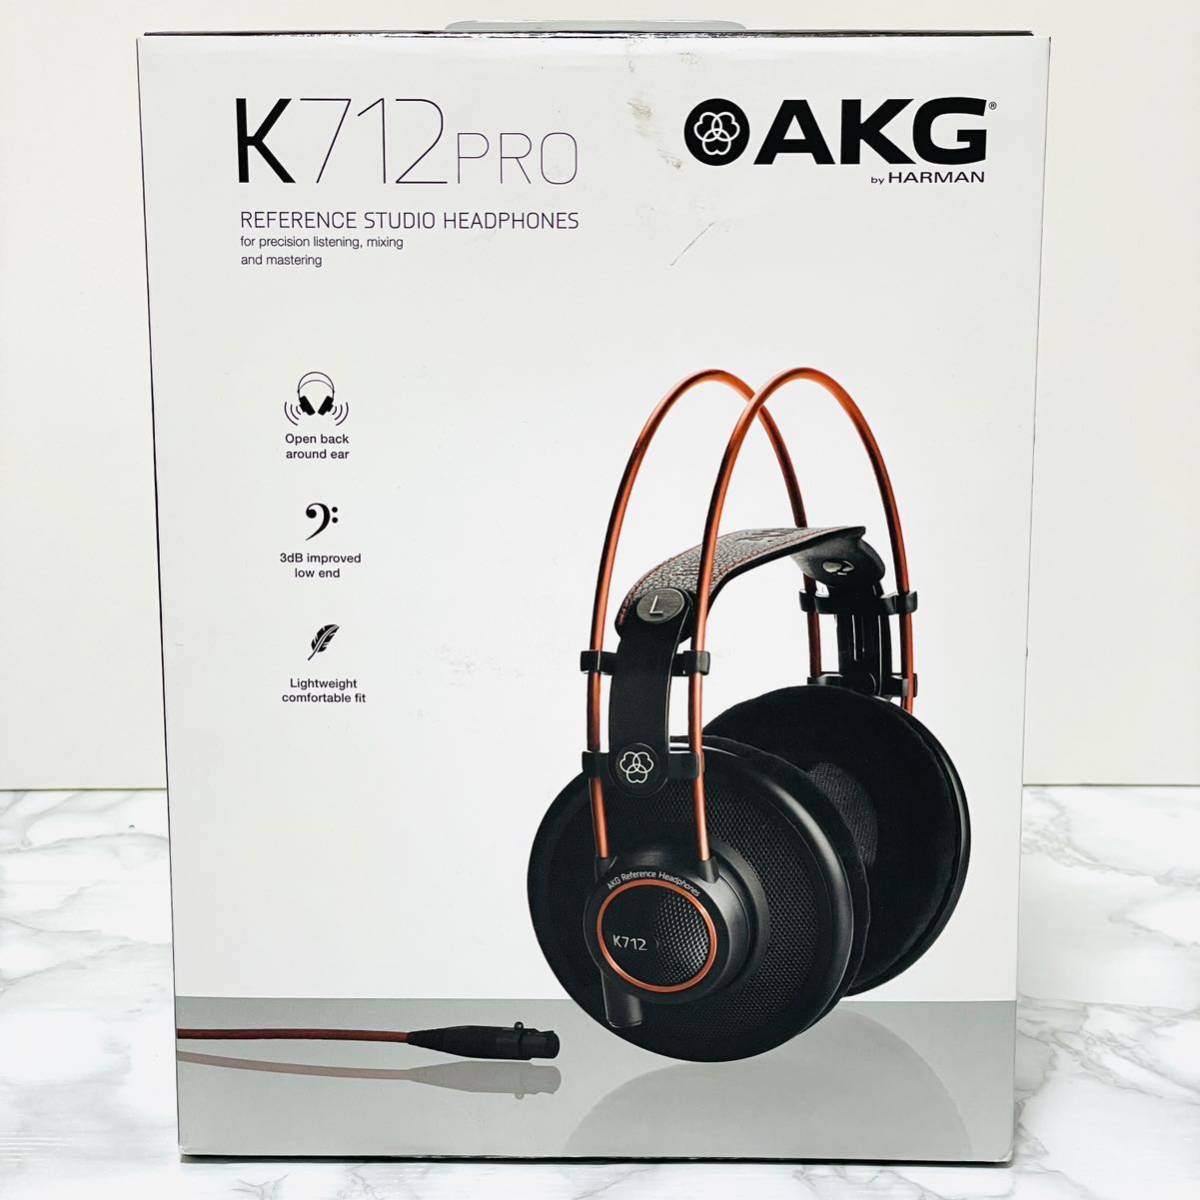 ヤフオク! -「akg k712 pro」(AKG) (ヘッドフォン)の落札相場・落札価格